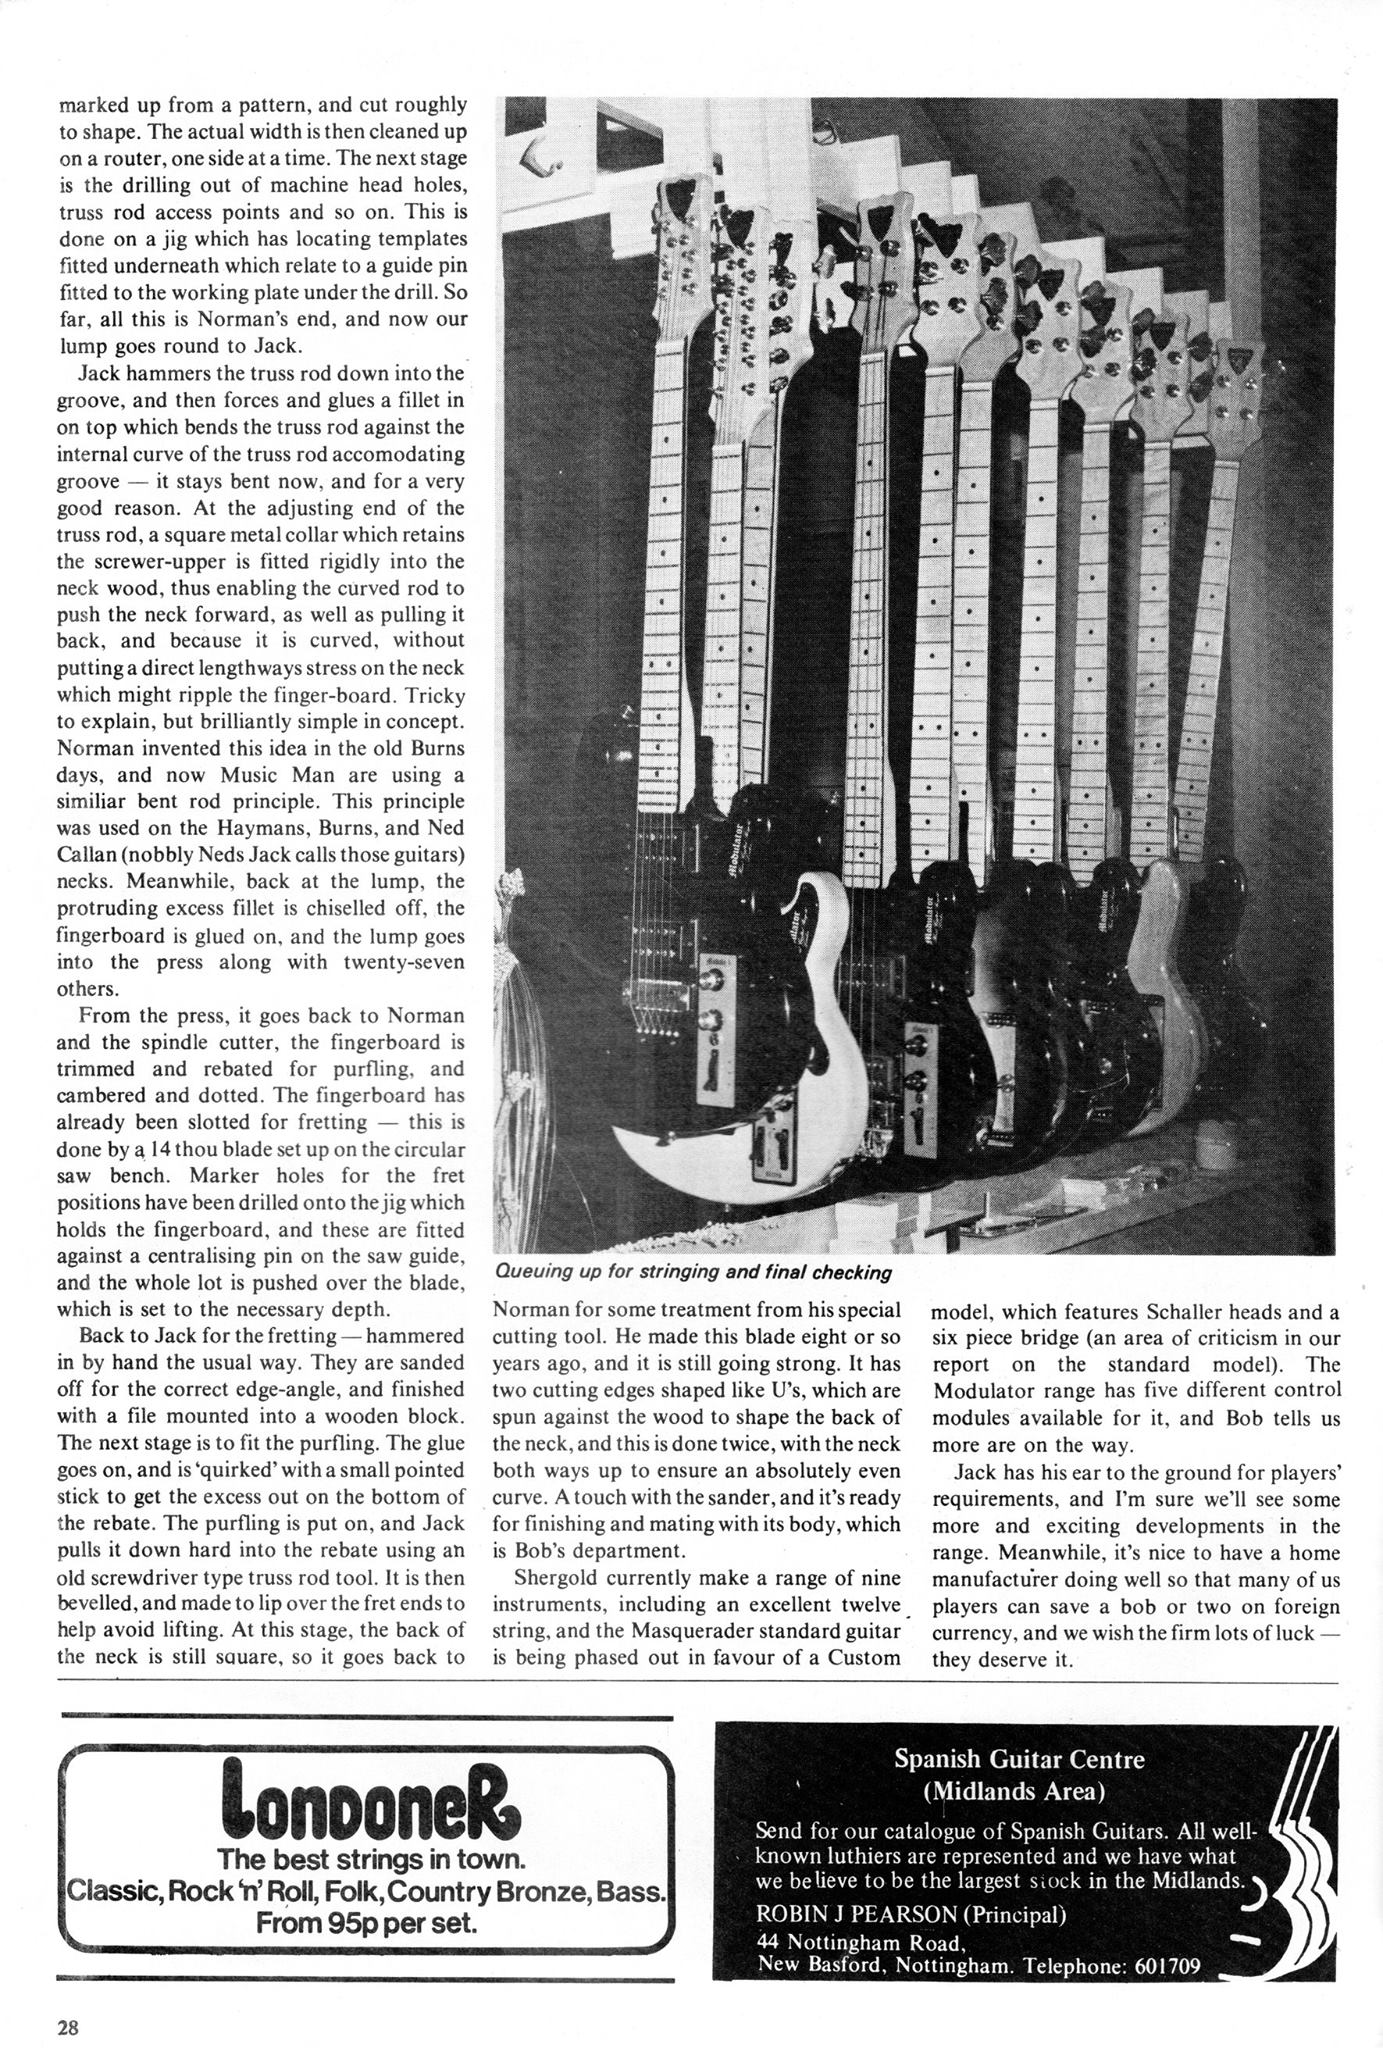 Shergold Guitar magzine feature Dec 1976